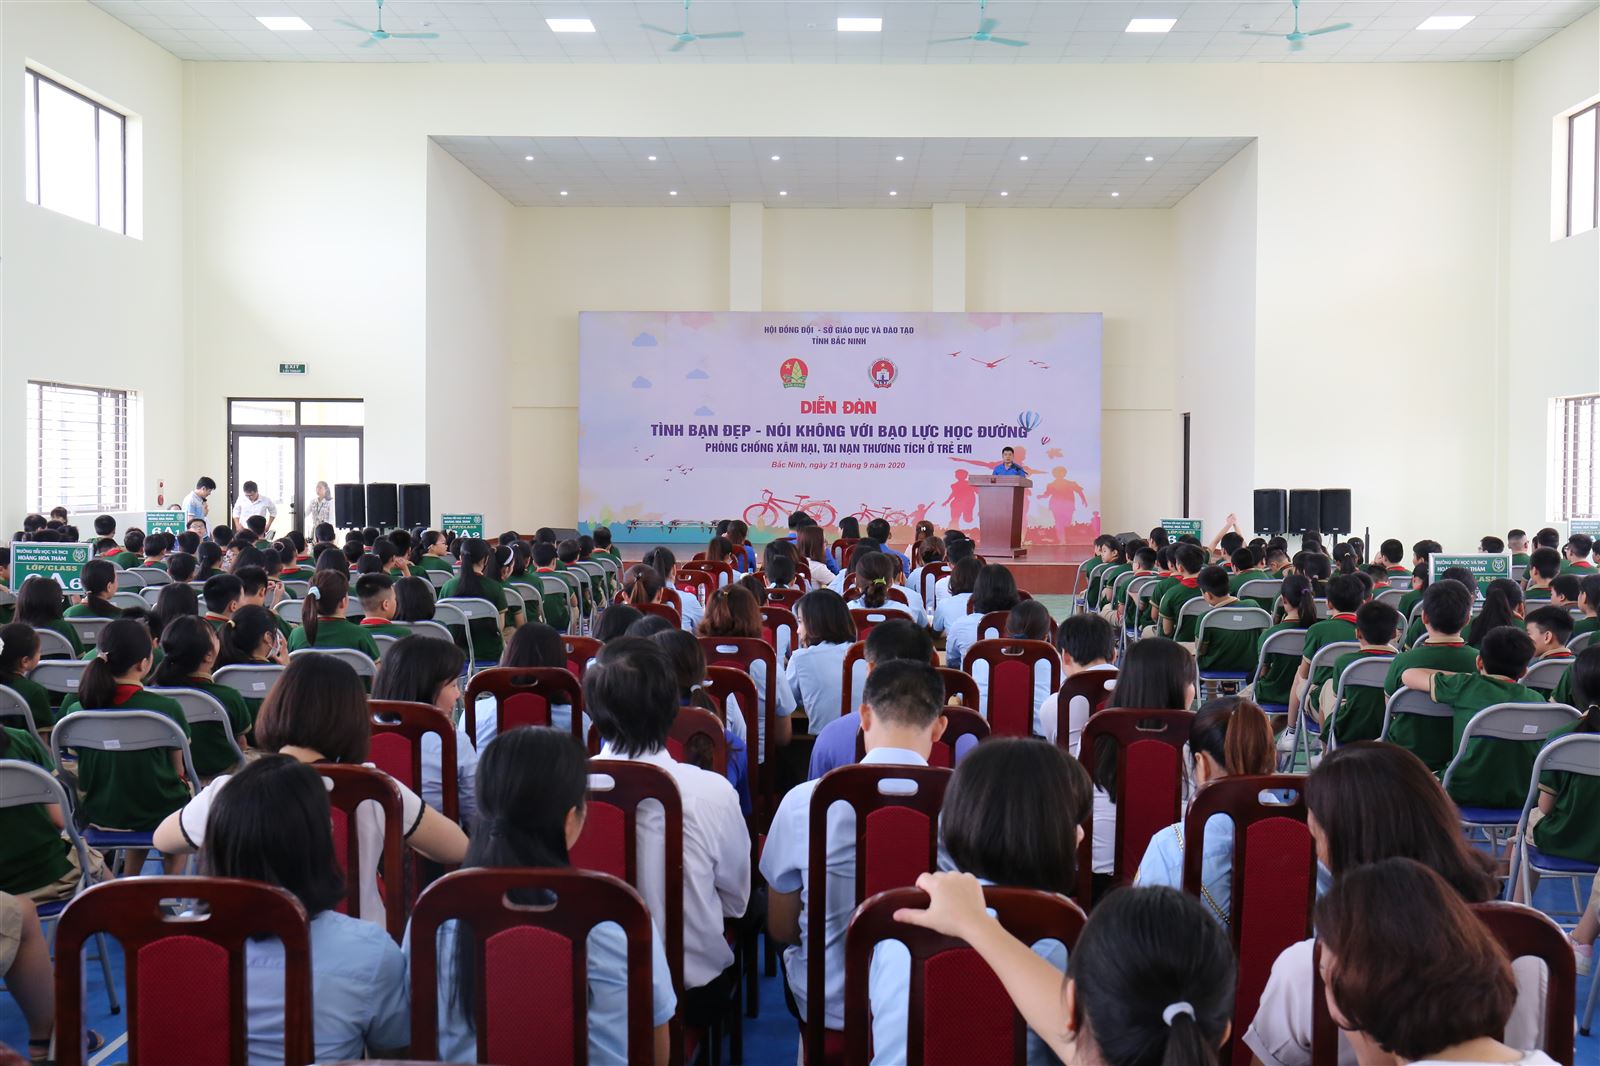 Bắc Ninh tổ chức Diễn đàn Xây dựng tình bạn đẹp - Nói không với bạo lực học đường năm 2020